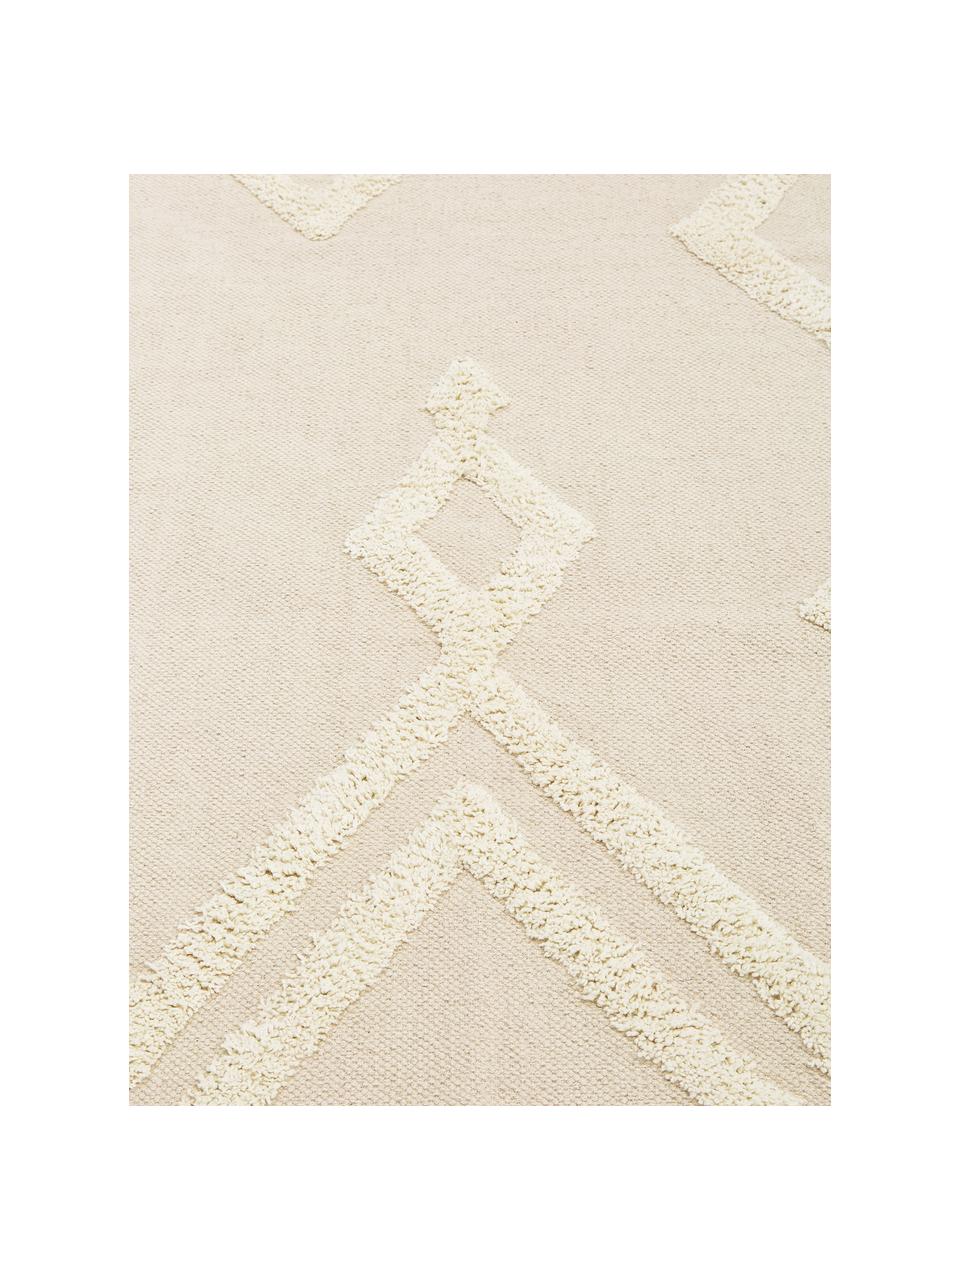 Teppich Canvas mit getufteter Verzierung, 100% Baumwolle, Gebrochenes Weiß, B 200 x L 300 cm (Größe L)